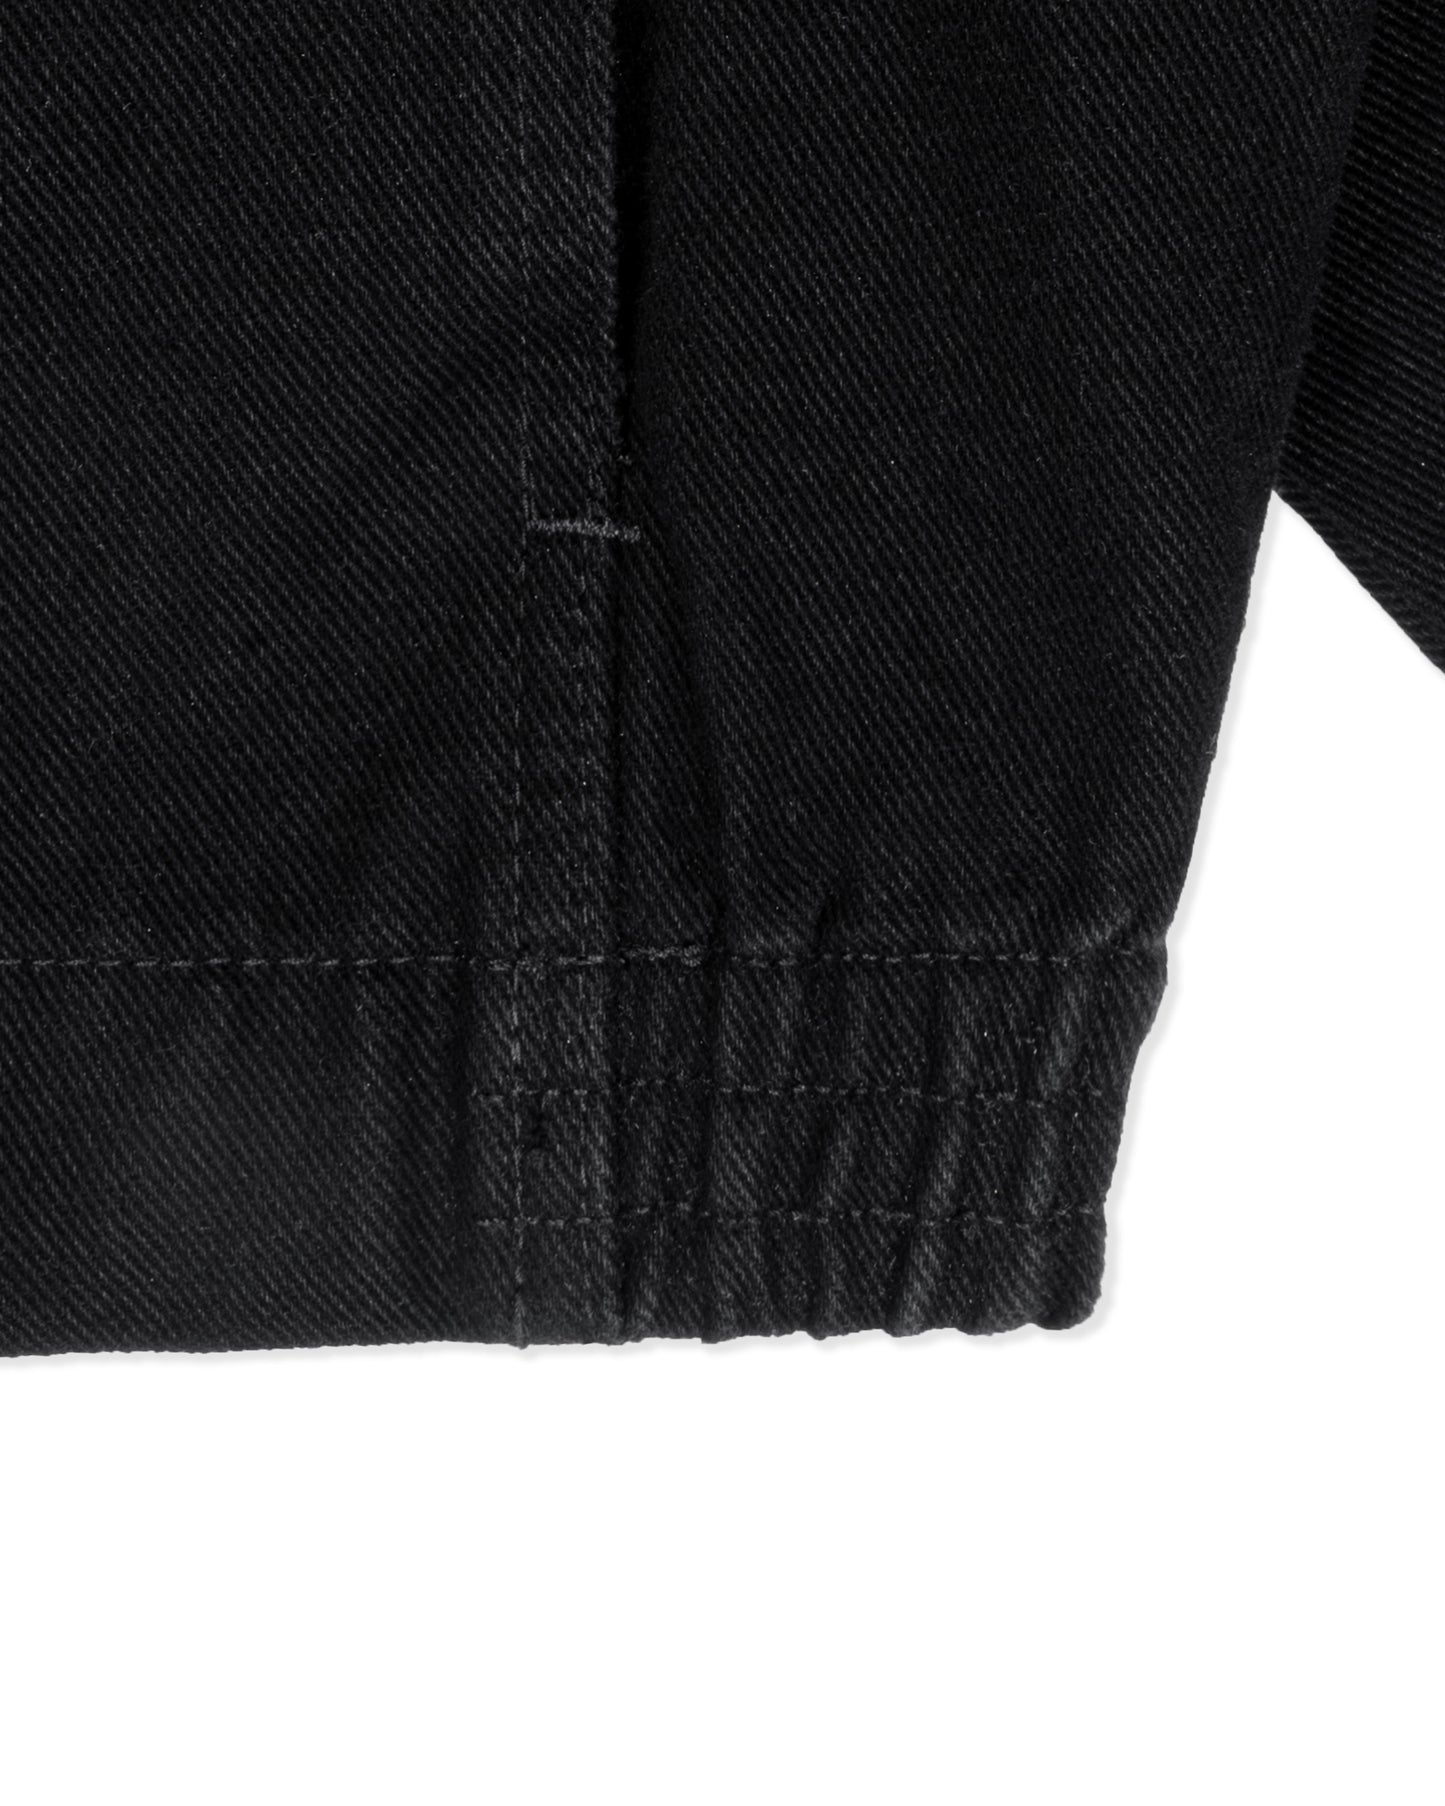 Levents® Official Boxy Khaki Jacket/ Black